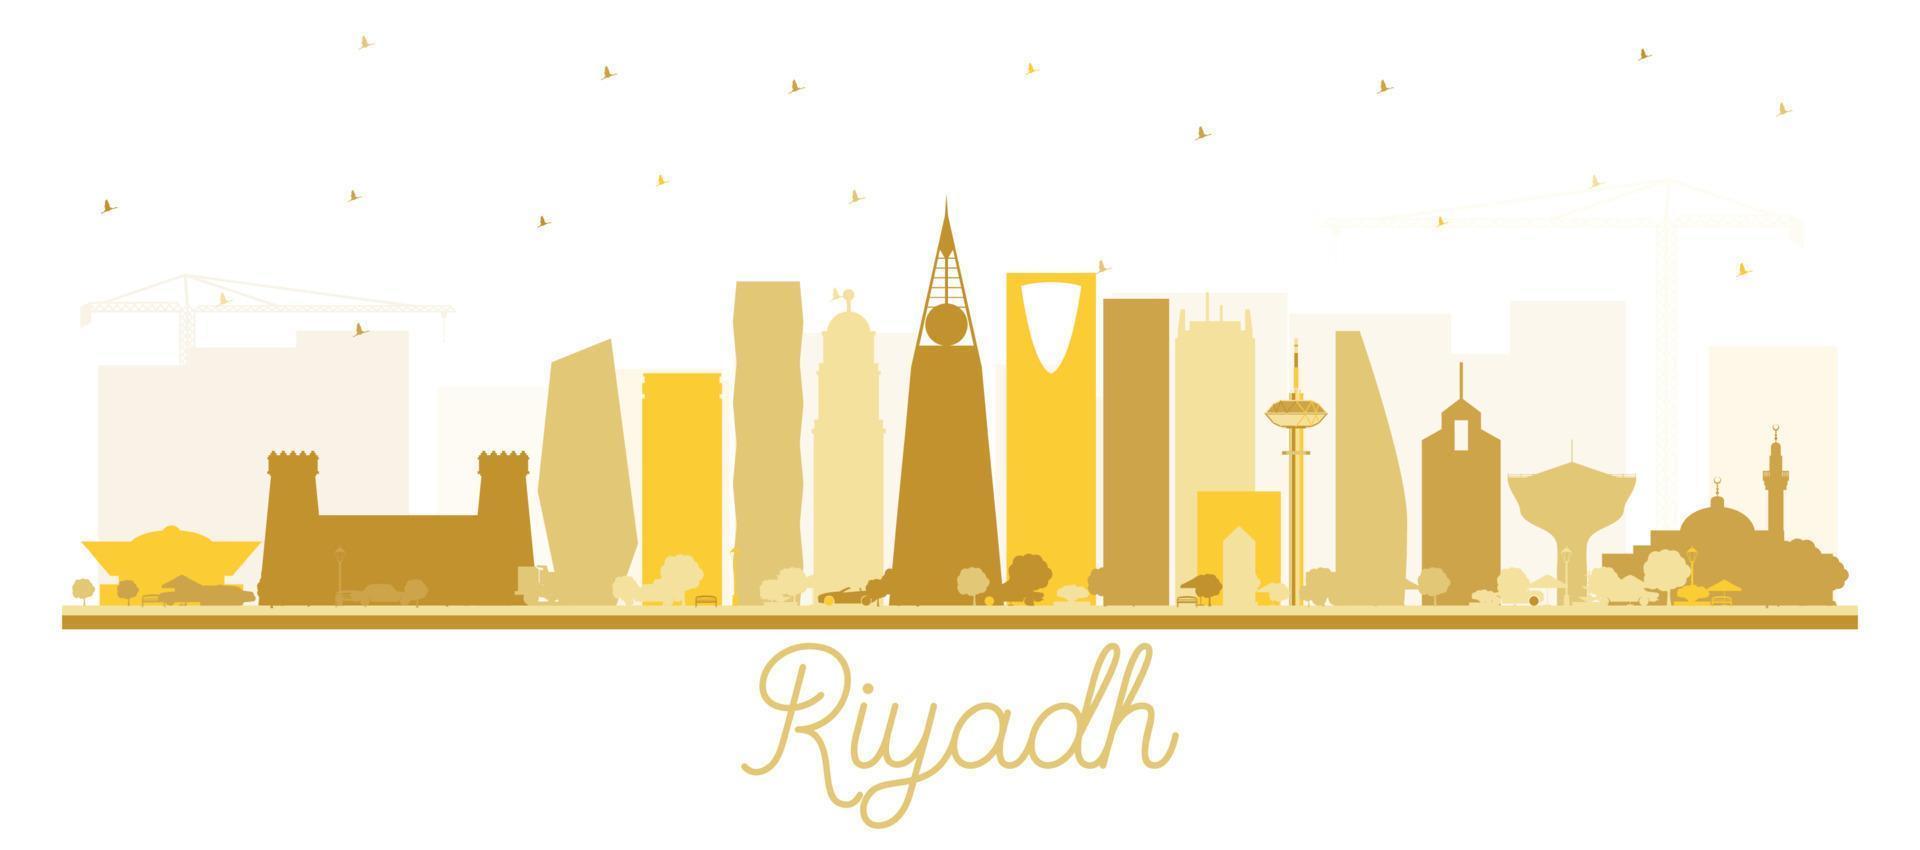 silueta del horizonte de la ciudad de riyadh arabia saudita con edificios dorados aislados en blanco. vector